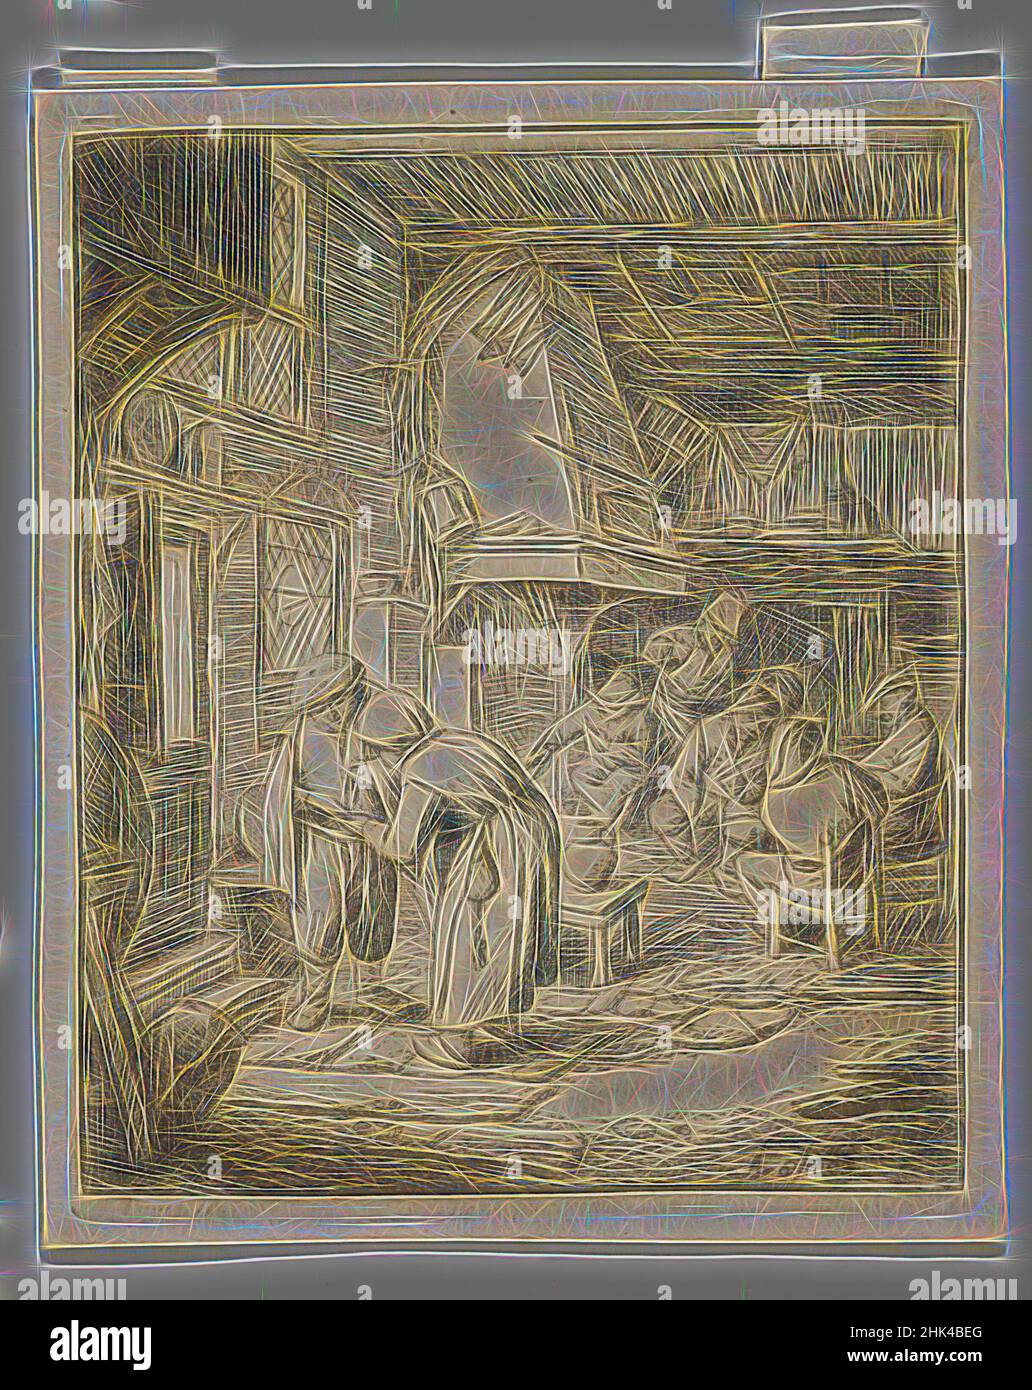 Inspirado por el Peasant que liquida su deuda, Adriaen van Ostade, holandés, 1610-1685, Etching, 1644?, lámina: 4 3/8 x 3 5/8 pulg., 11,1 x 9,2 cm, barroco, holandés, grabado, interior, Campesino, reimaginado por Artotop. Arte clásico reinventado con un toque moderno. Diseño de brillo cálido y alegre y luminosidad e radiación de rayos de luz. Fotografía inspirada en el surrealismo y el futurismo, que abarca la energía dinámica de la tecnología moderna, el movimiento, la velocidad y la revolución de la cultura Foto de stock